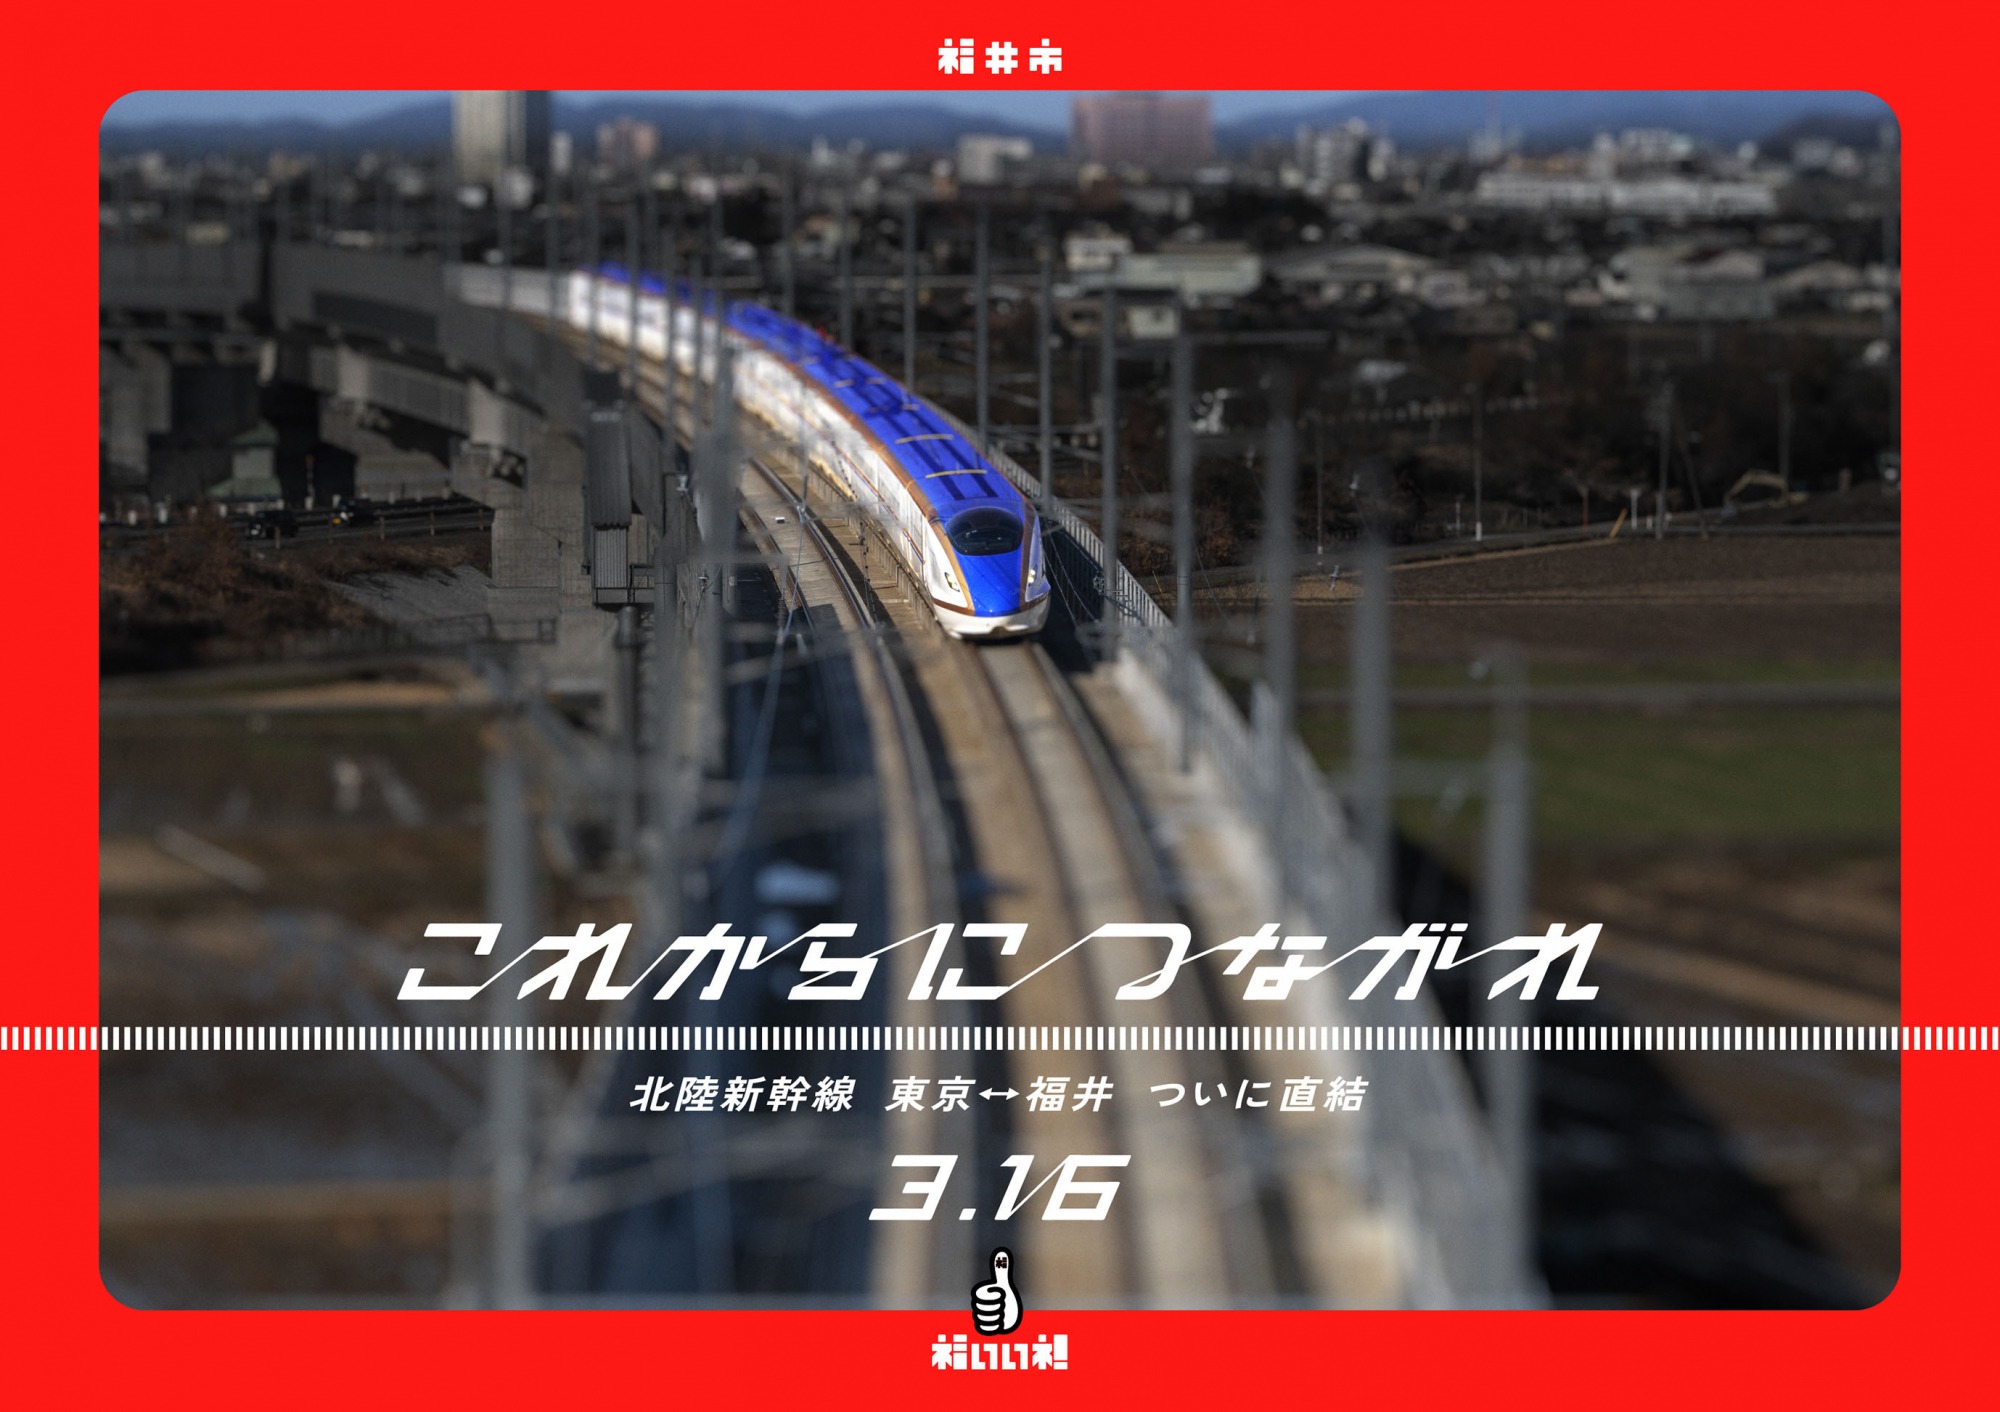 東京駅に北陸新幹線福井開業PRポスターを掲出しました。